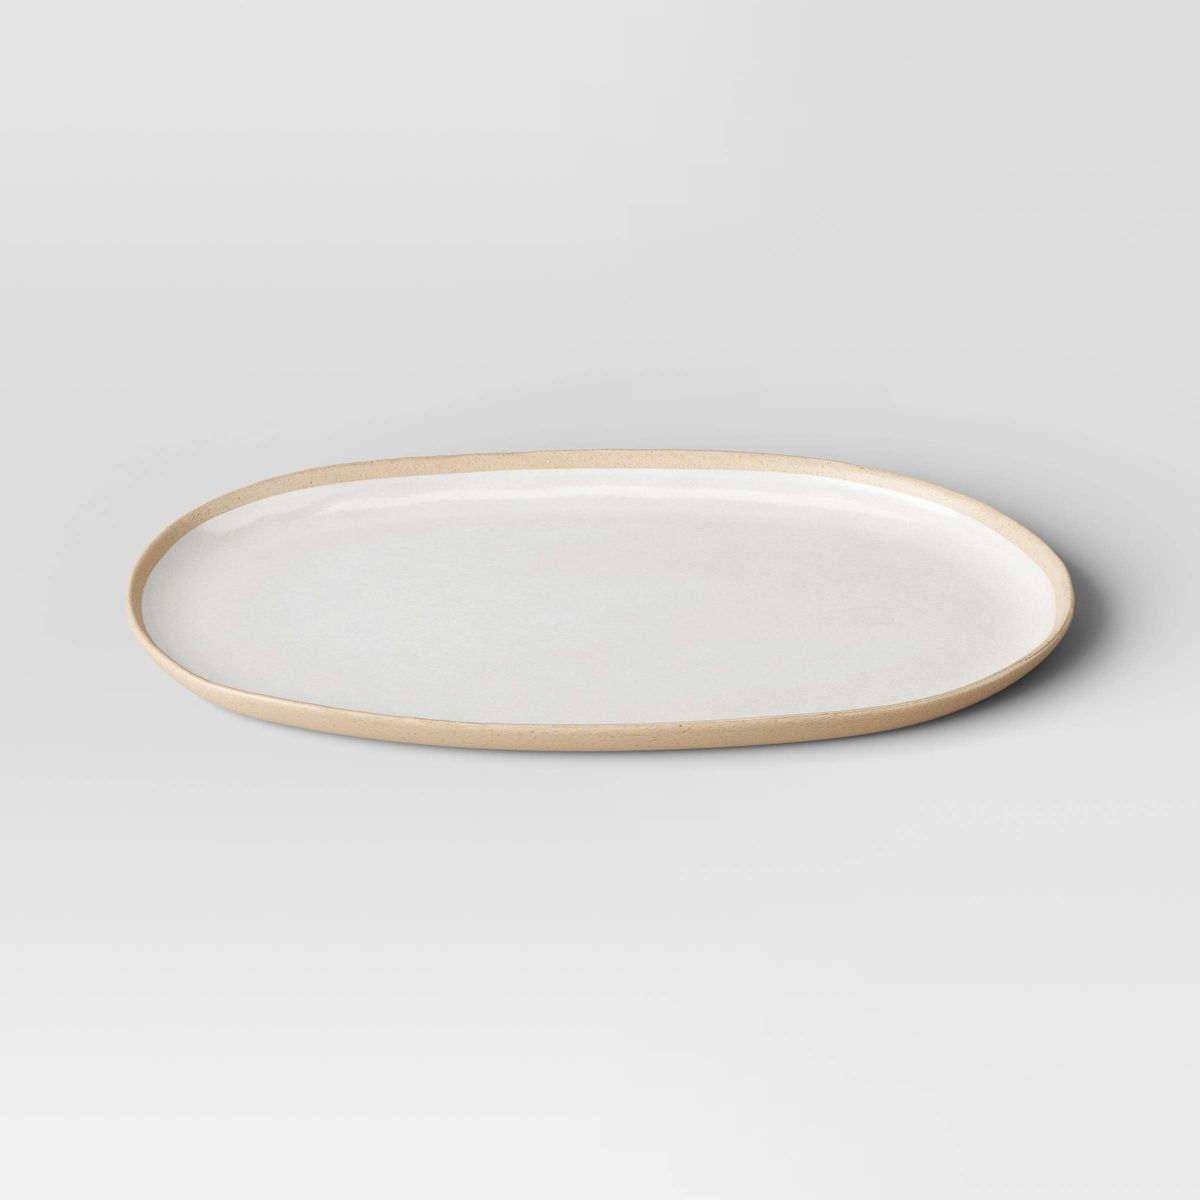 Small Melamine Oval Serving Platter Ivory - Threshold™ | Target